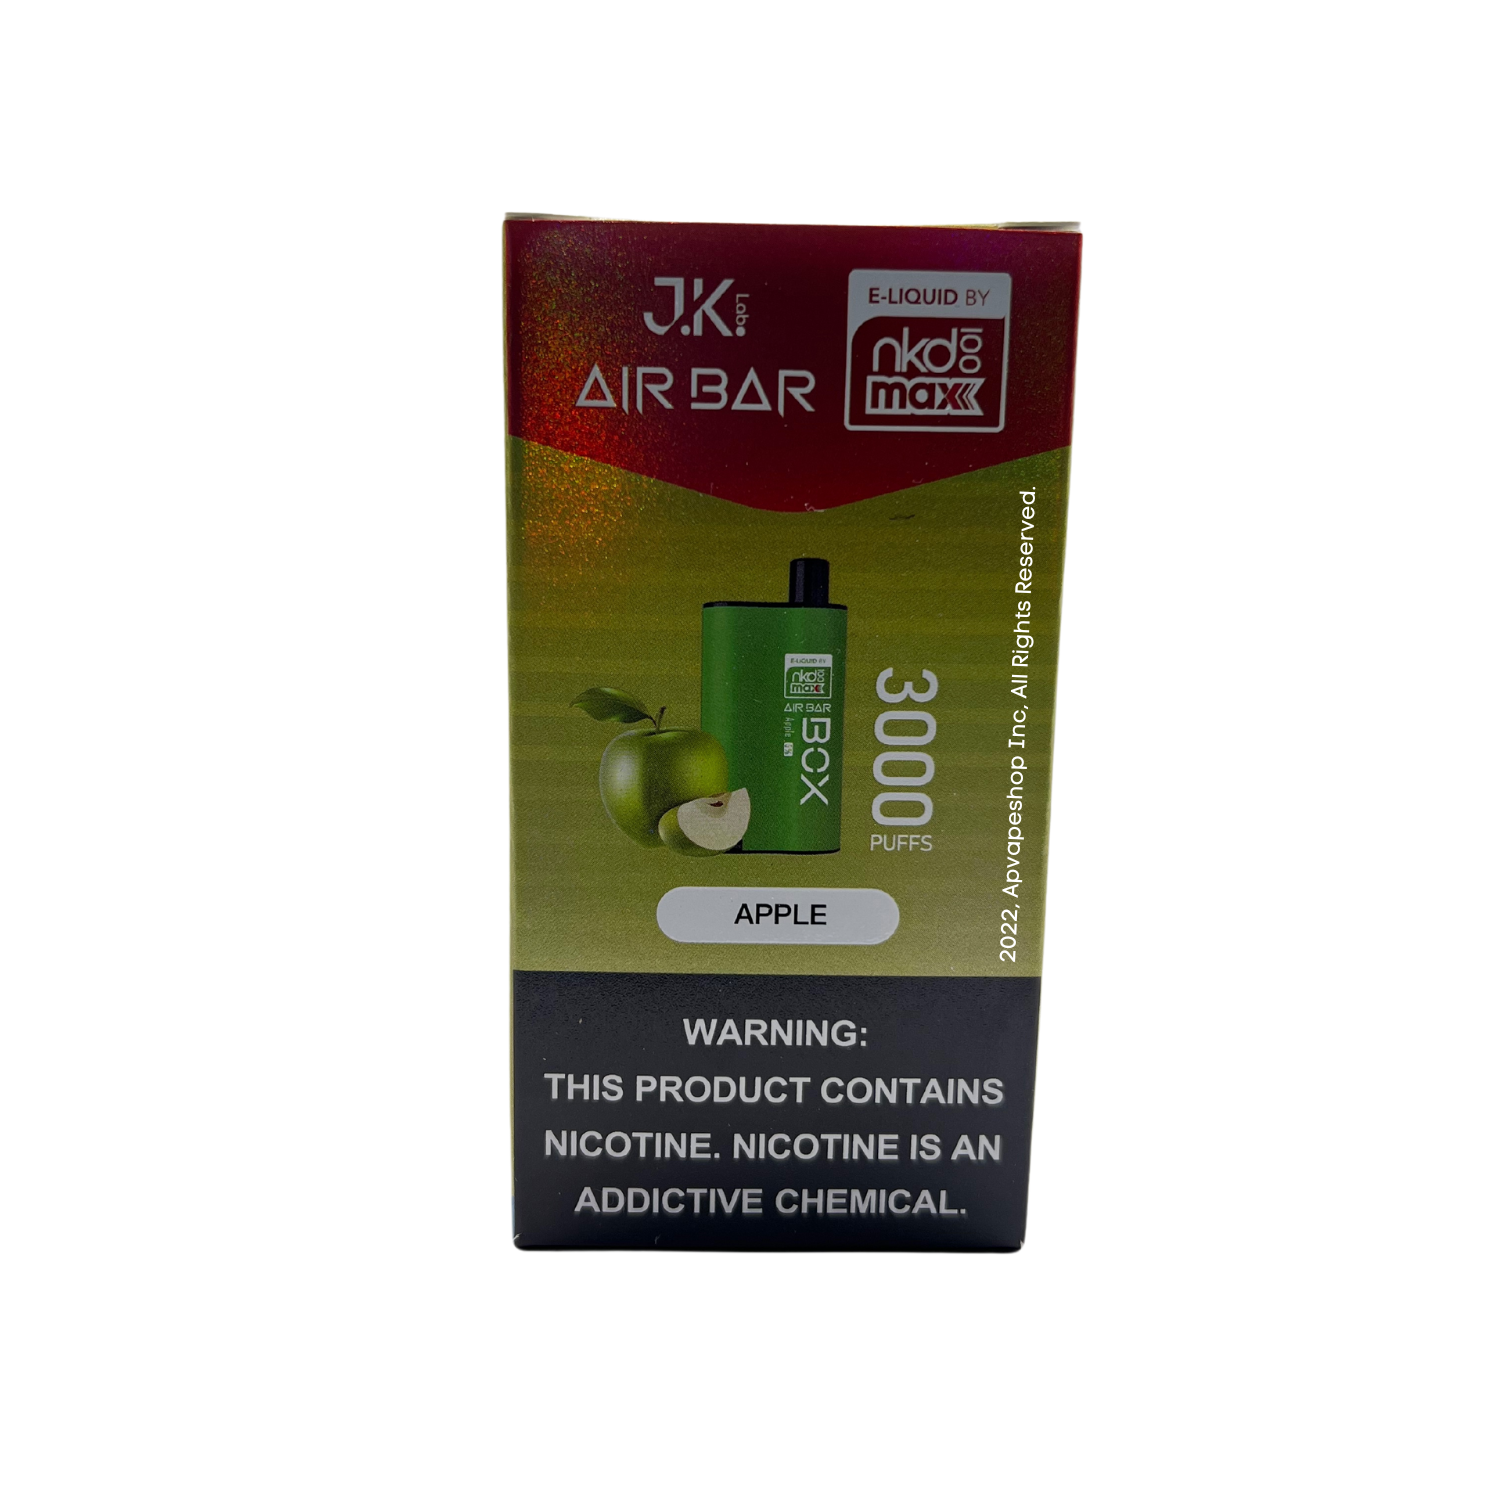 Air Bar Box & NKD 100 Max 3000 Puffs Disposable Vape